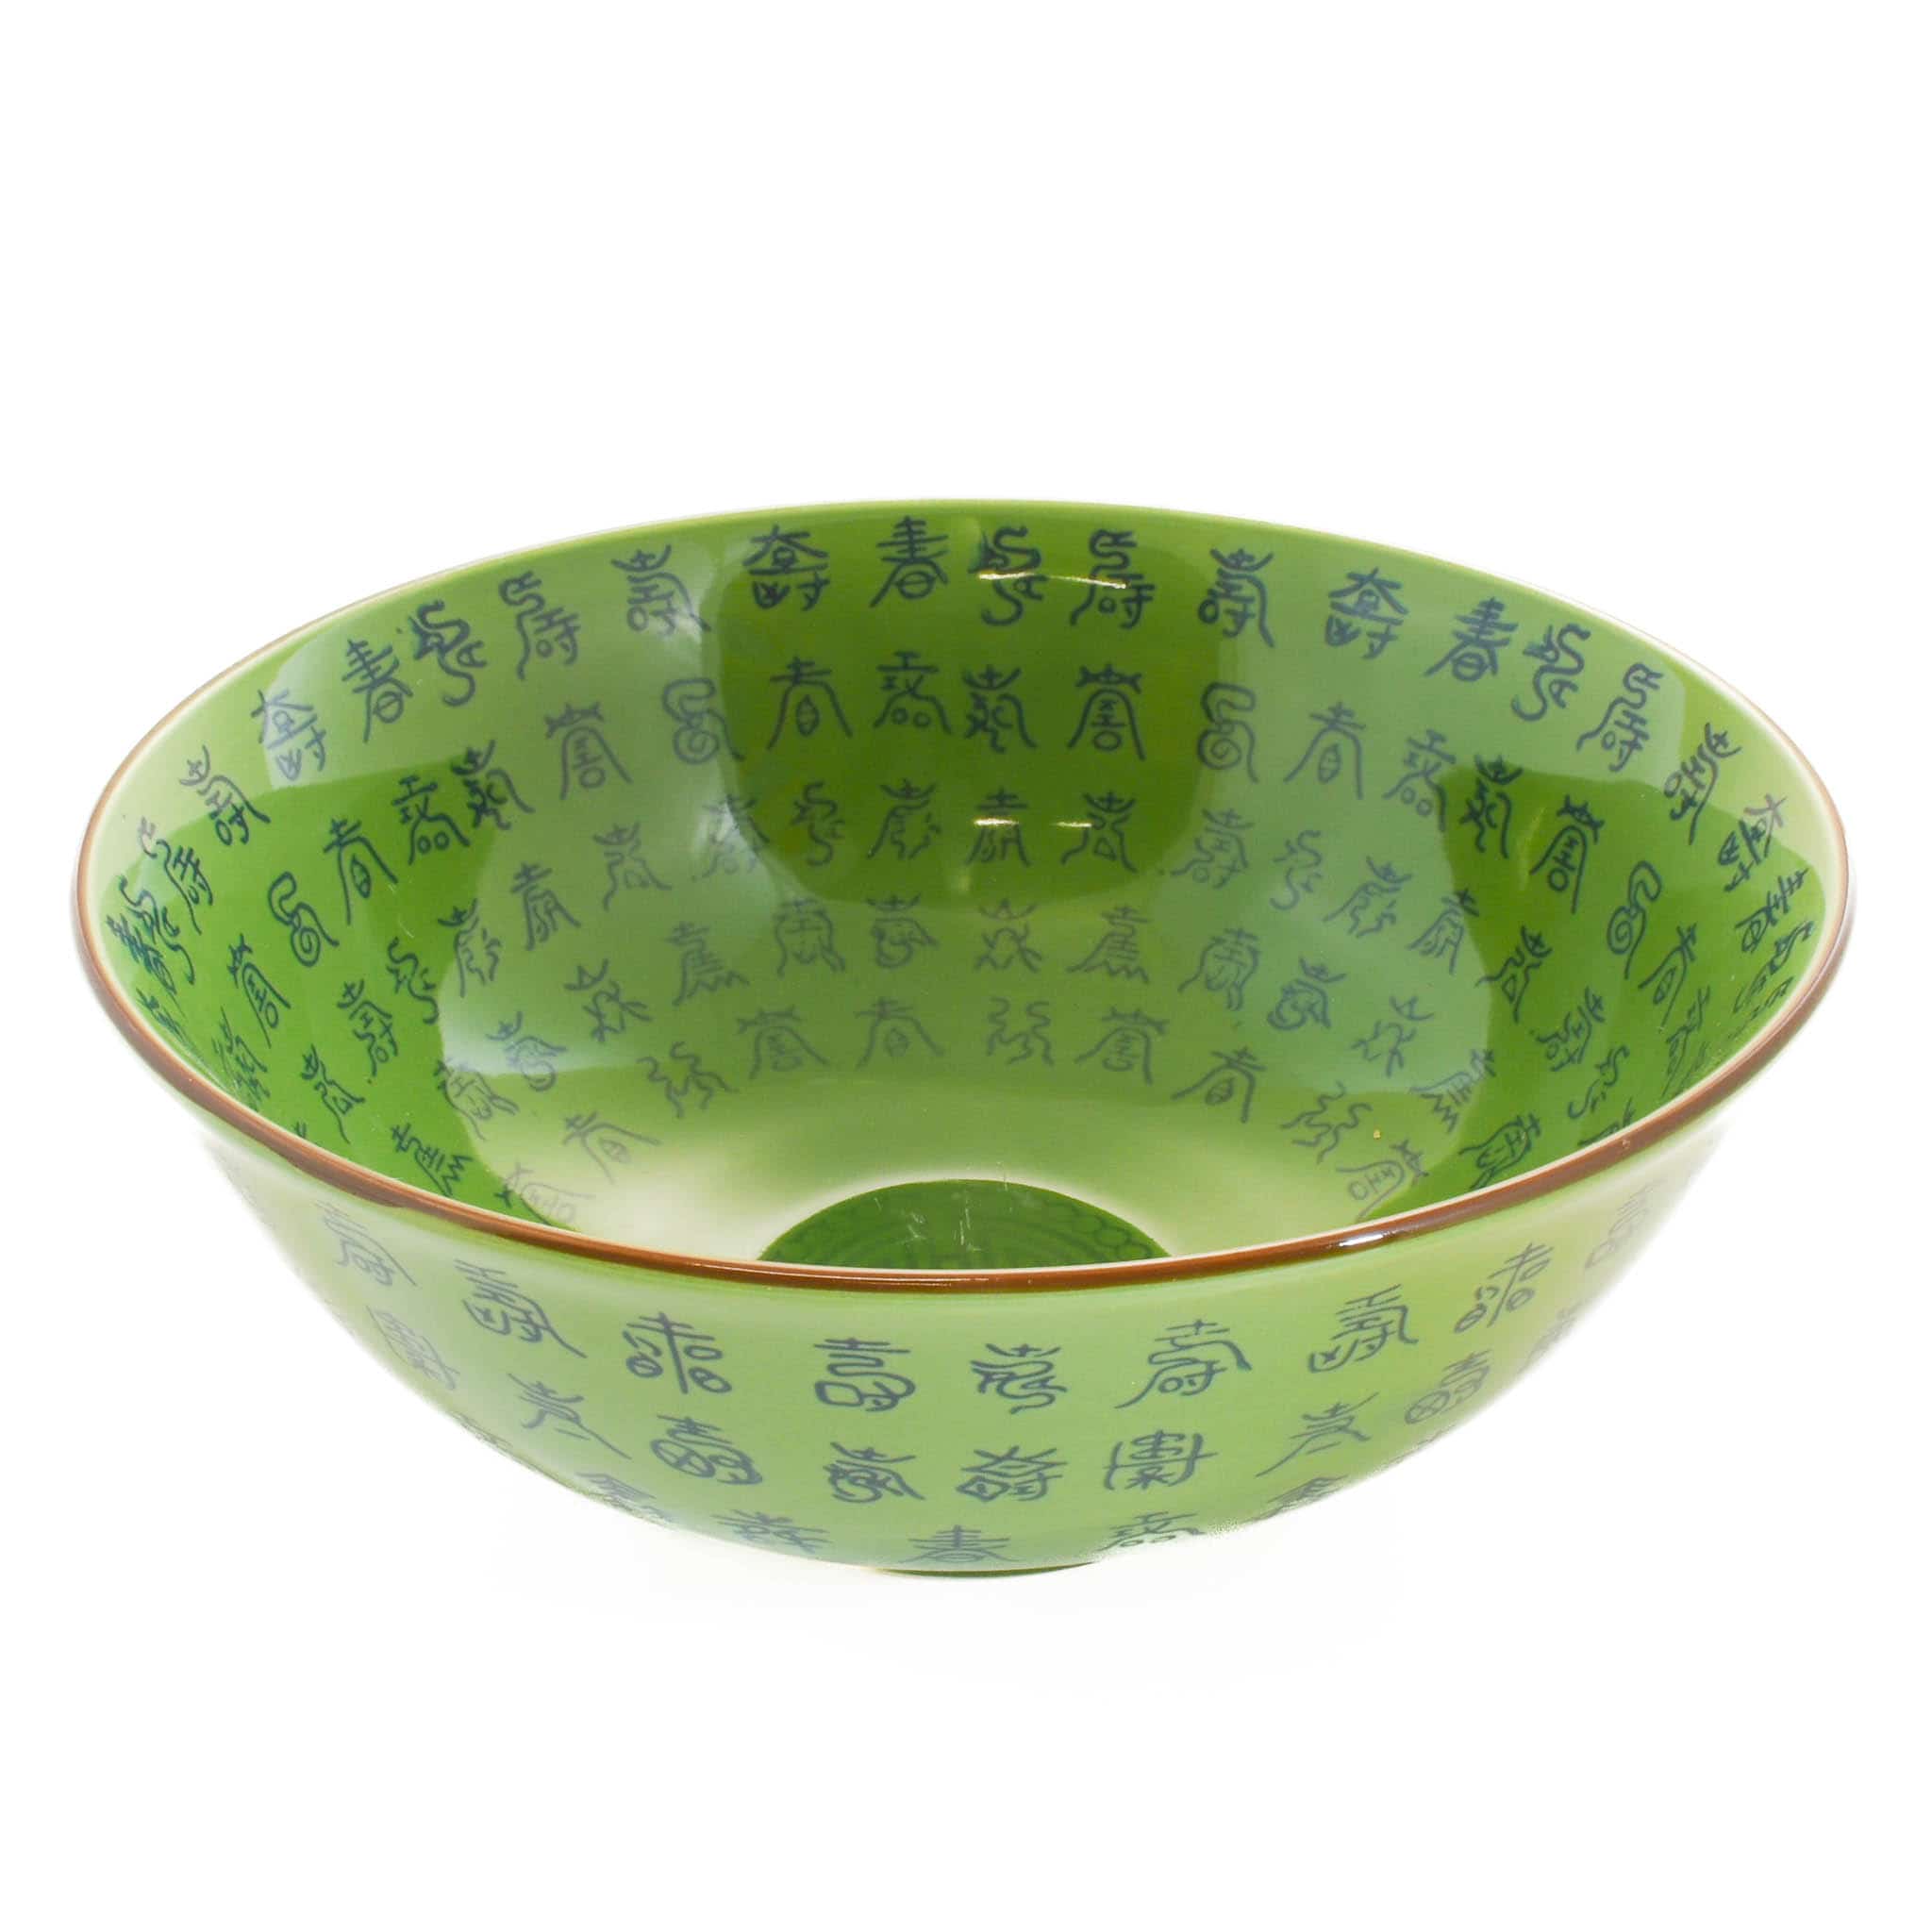 Green Chinese Ceramic Large Bowl, 22cm